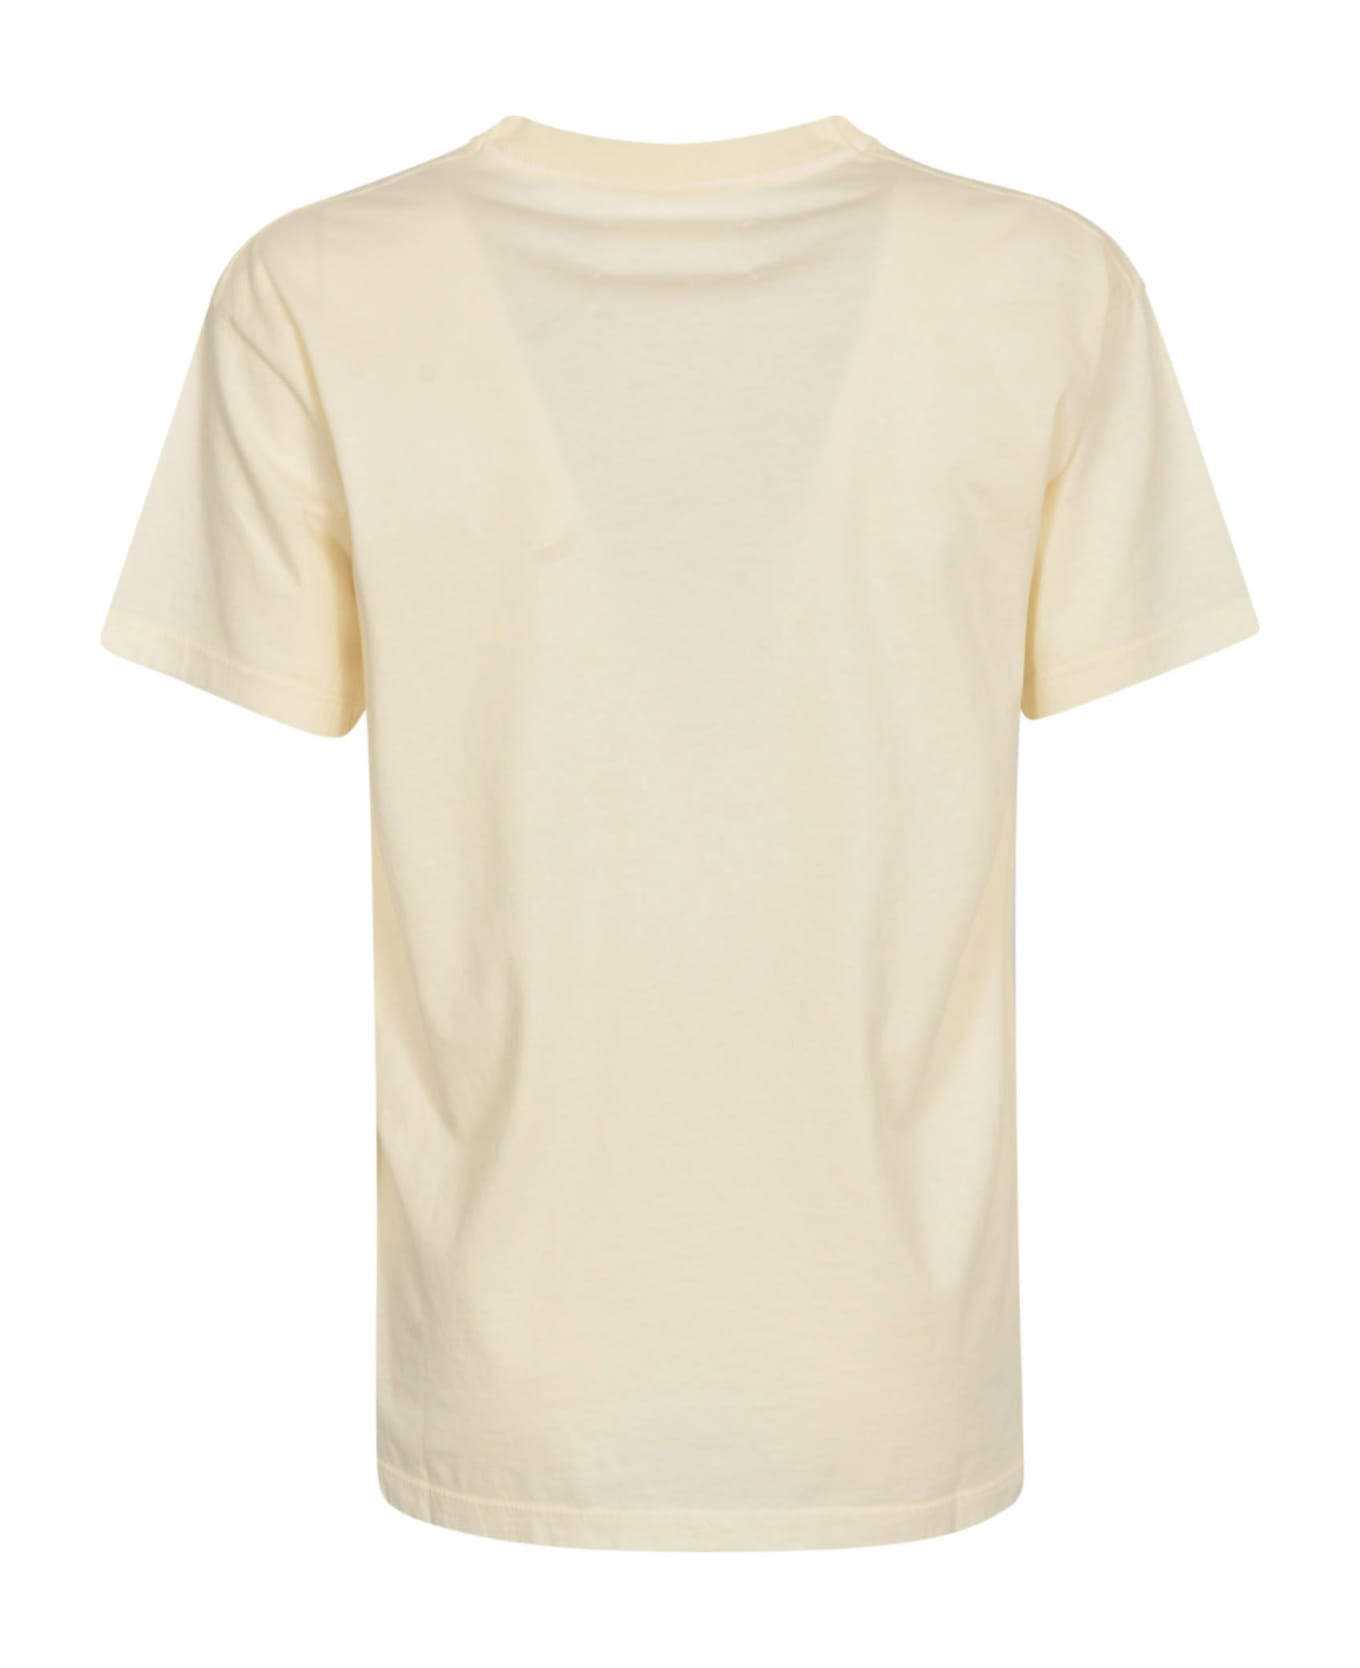 Maison Margiela Round Neck T-shirt - Off-White